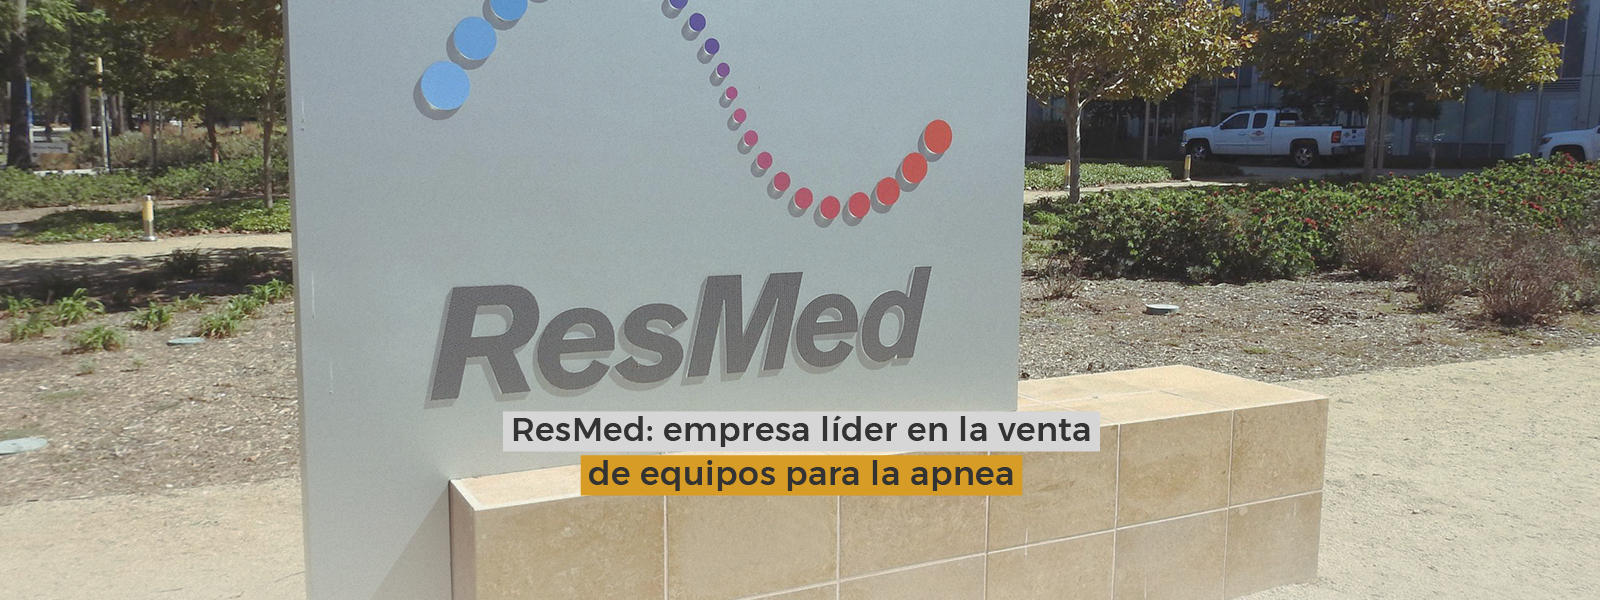 ResMed: empresa líder en la venta de equipos para la apnea